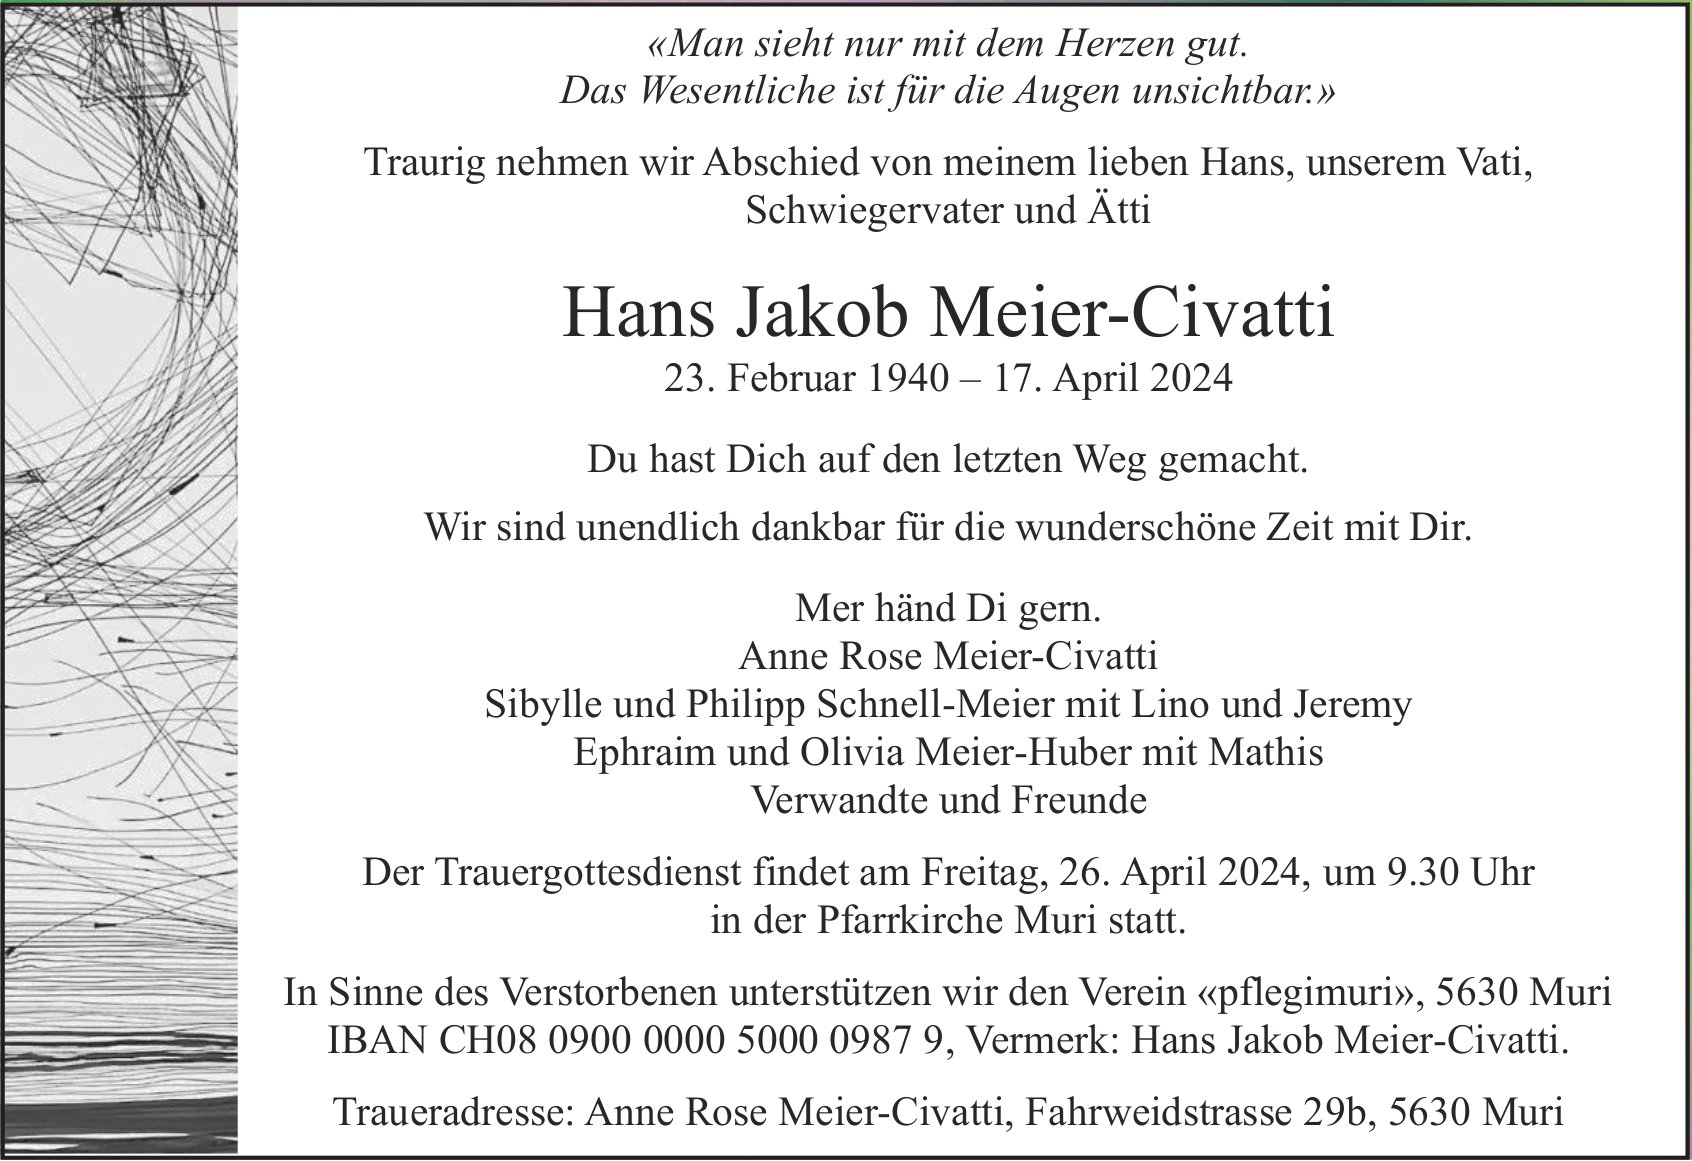 Hans Jakob Meier-Civatti, April 2024 / TA